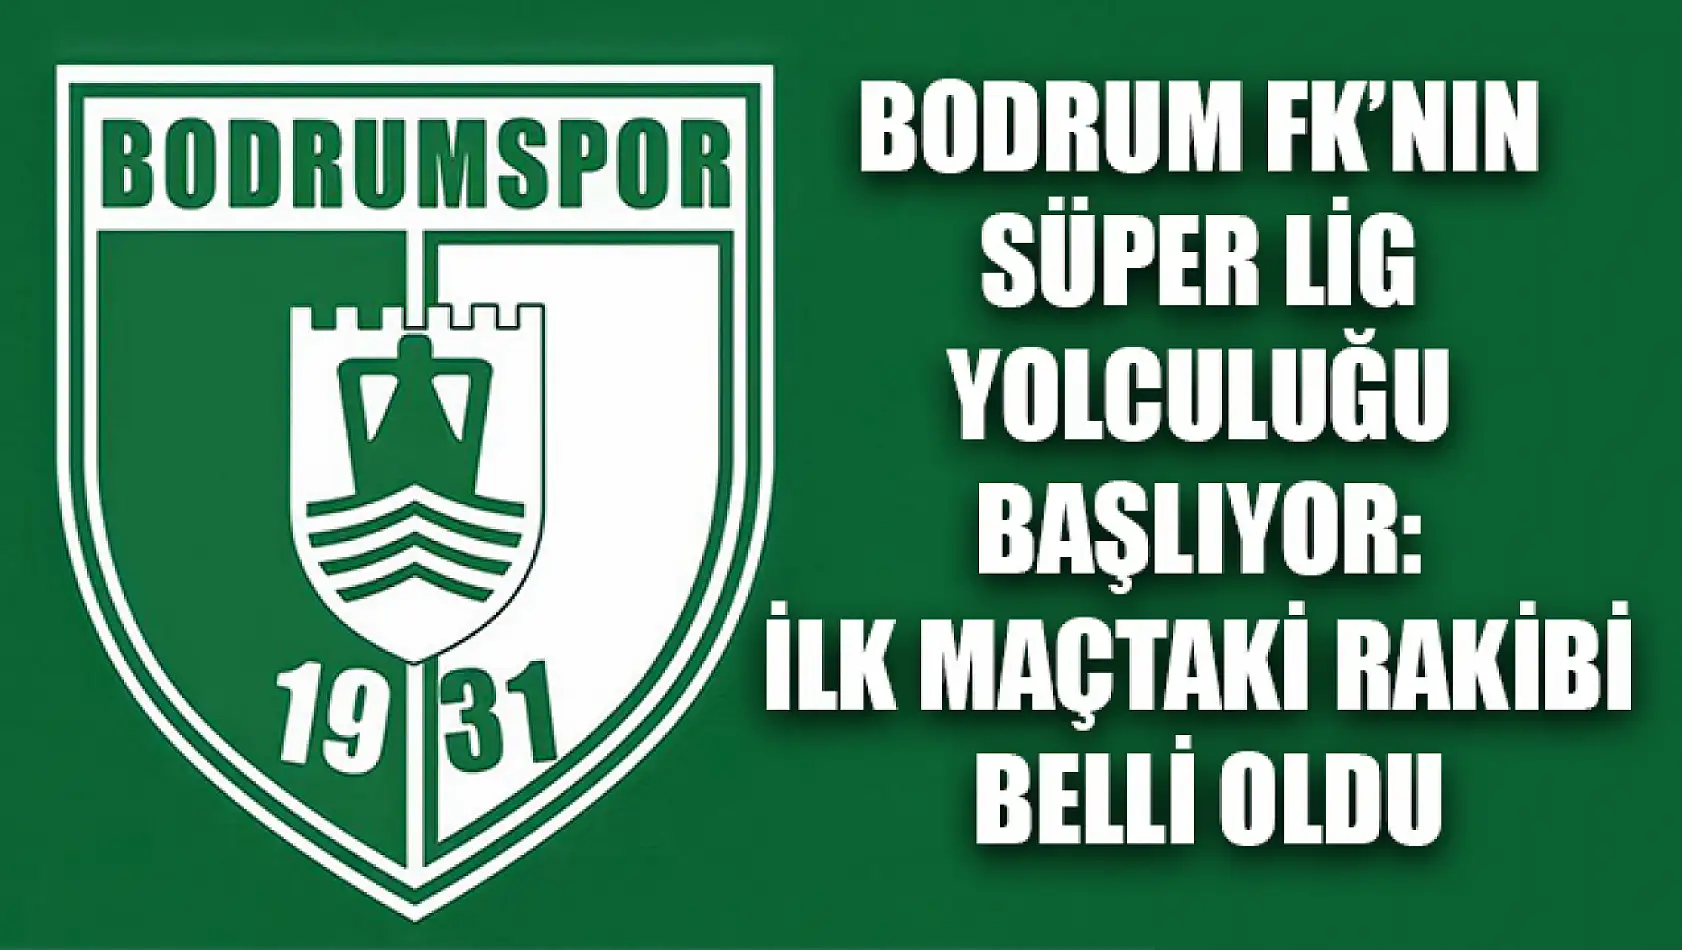 Bodrum FK'nın Süper Lig Yolculuğu Başlıyor: İlk Maçtaki Rakibi Belli Oldu